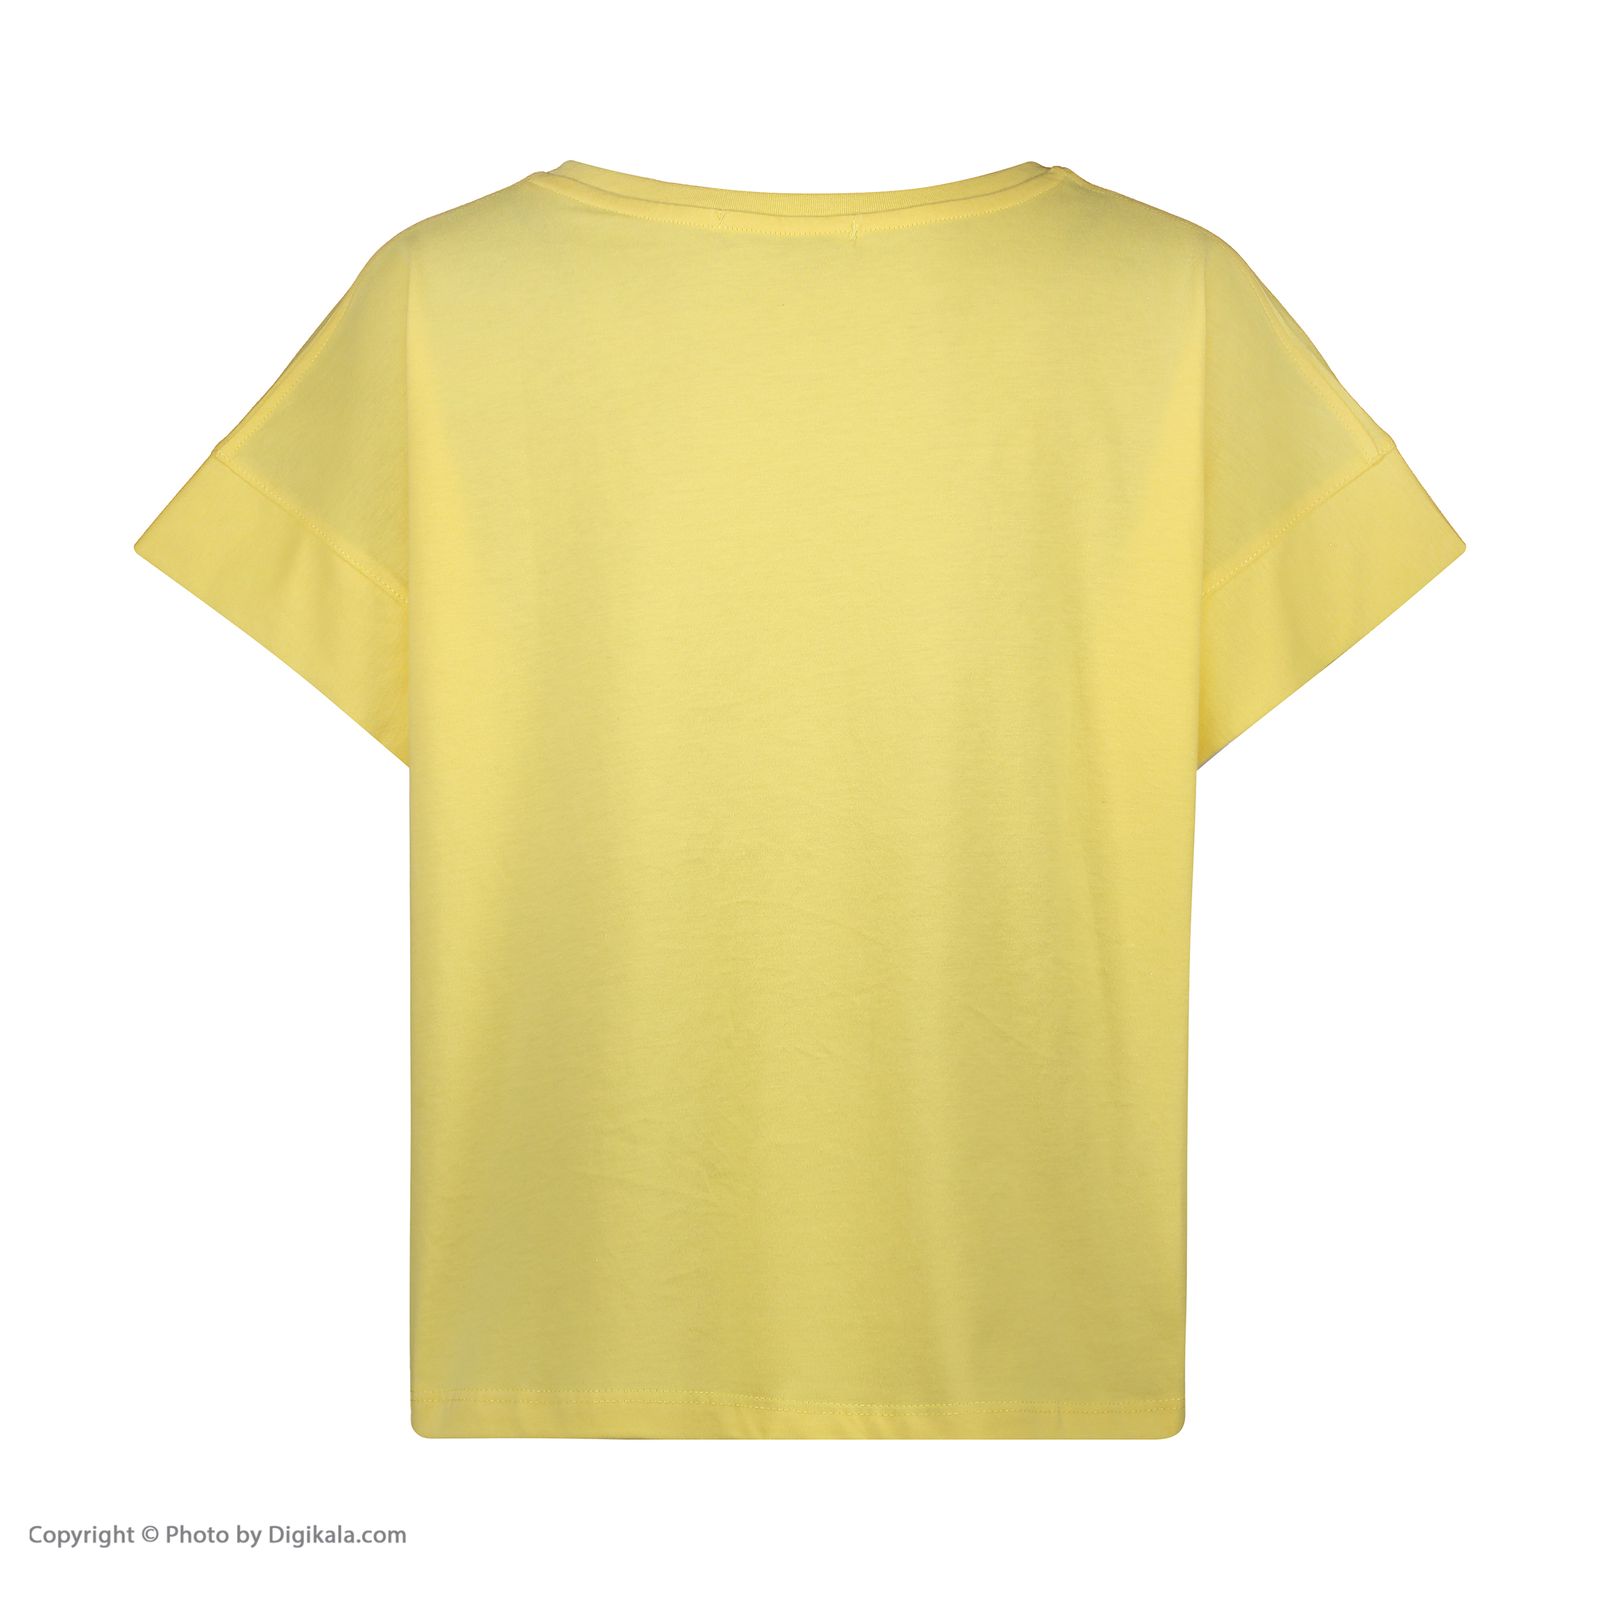  تی شرت زنانه جامه پوش آرا مدل 4012019396-16 -  - 3